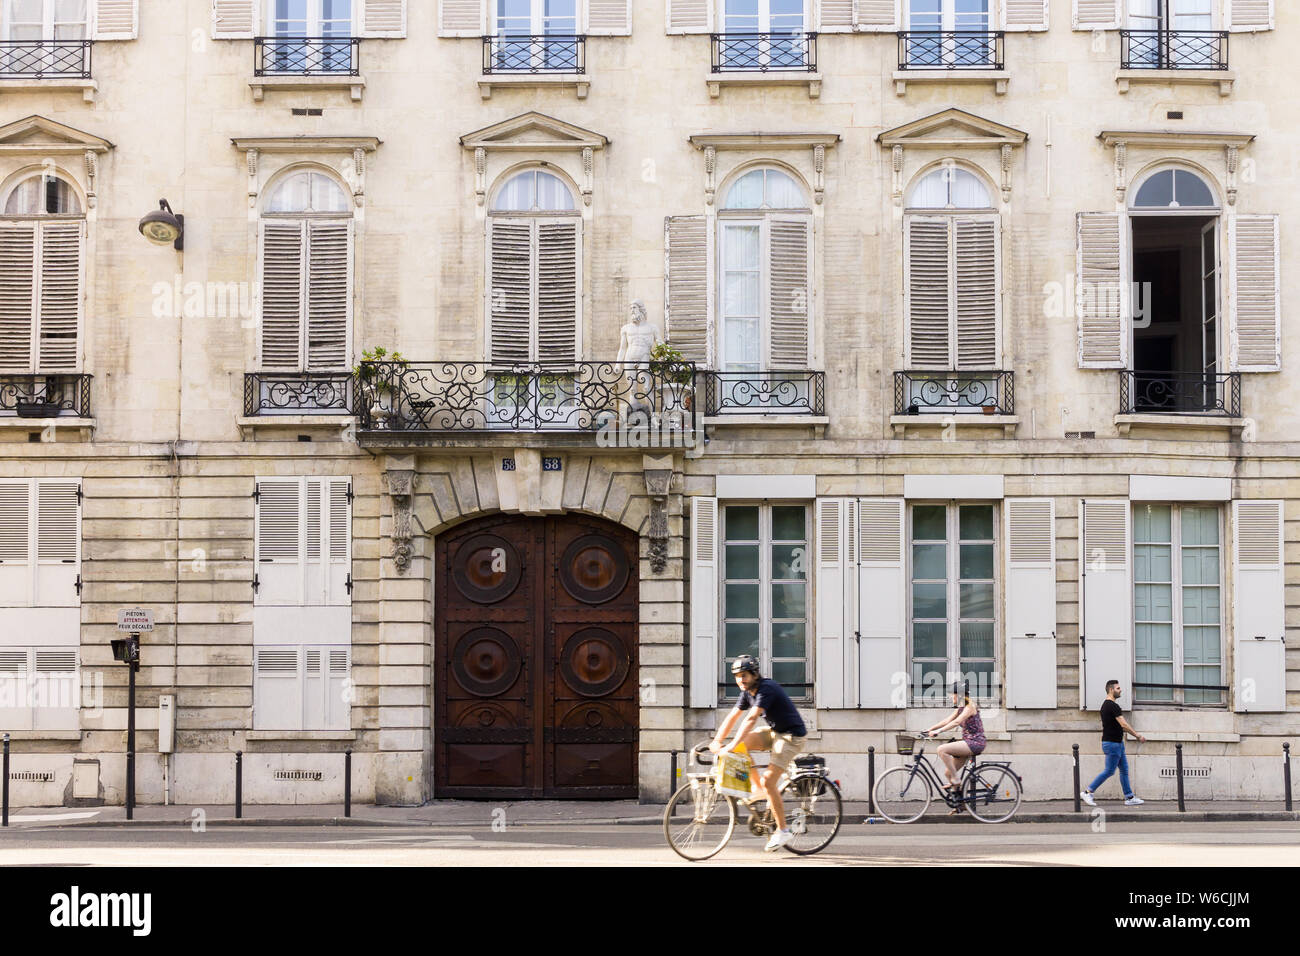 Paris Street Scene - Menschen Radfahren auf der Rue Vaugirard in das Bezirksgericht Luxemburg (6. Arrondissement) in Paris, Frankreich, Europa. Stockfoto